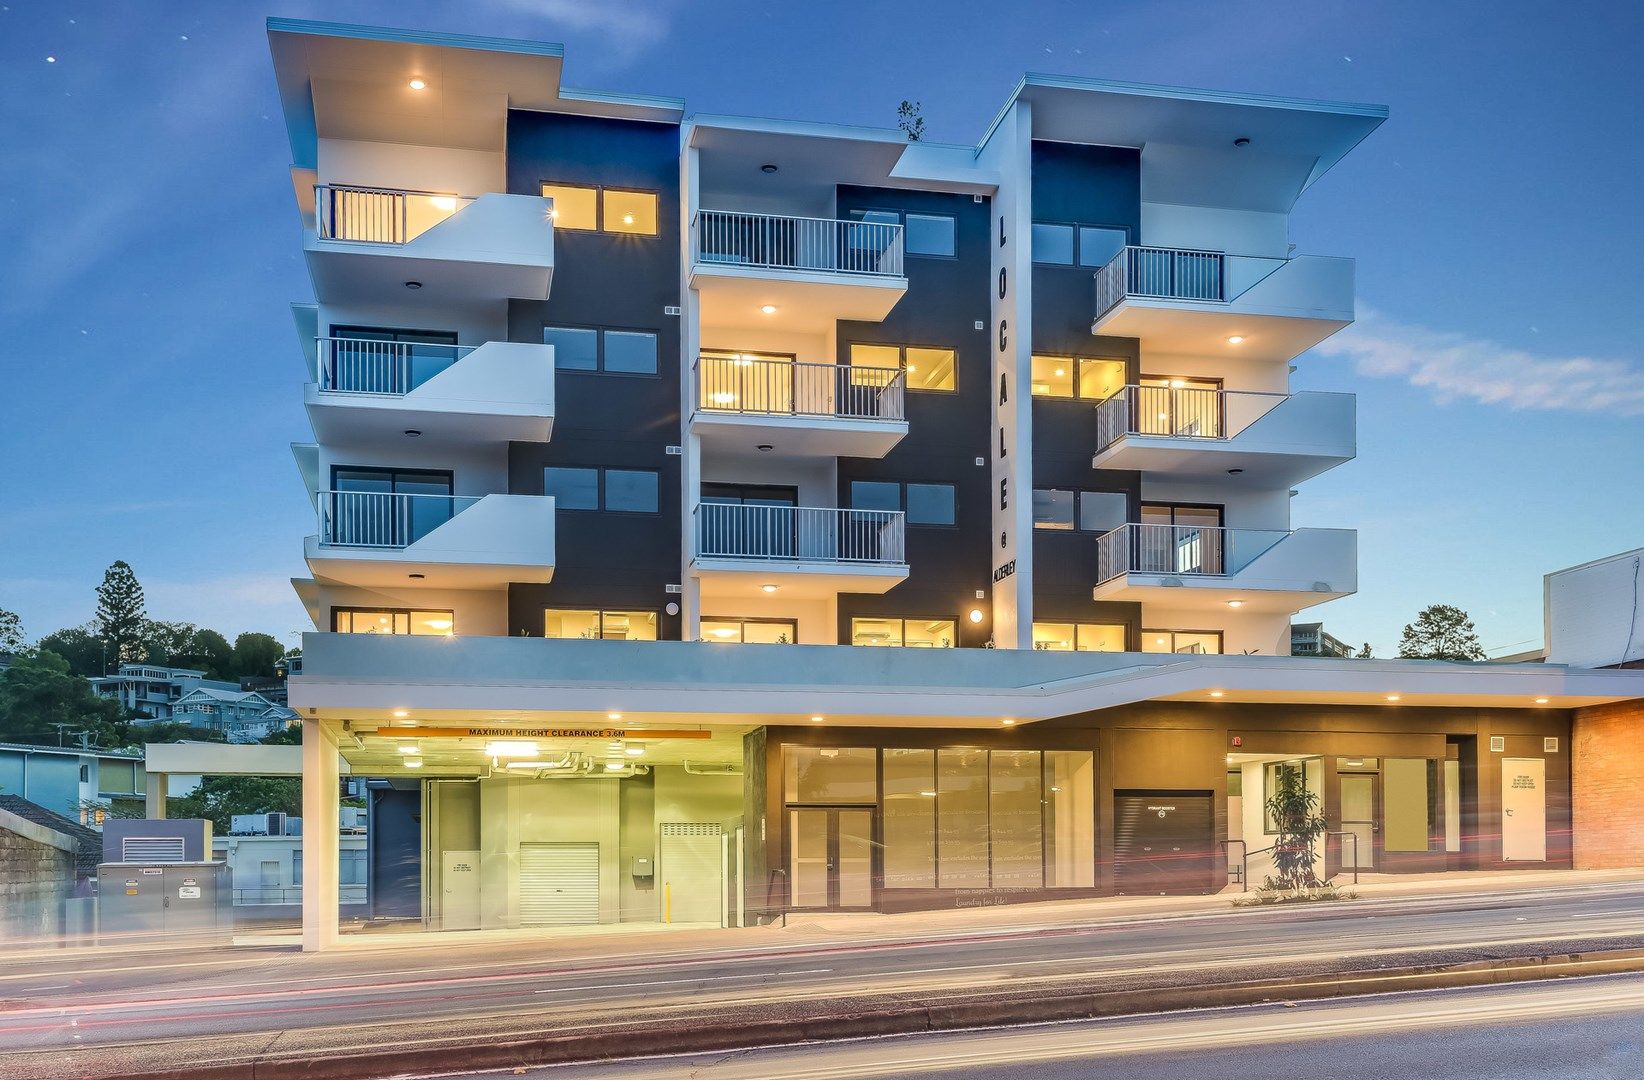 1 bedrooms Apartment / Unit / Flat in 452-454 Enoggera Road ALDERLEY QLD, 4051